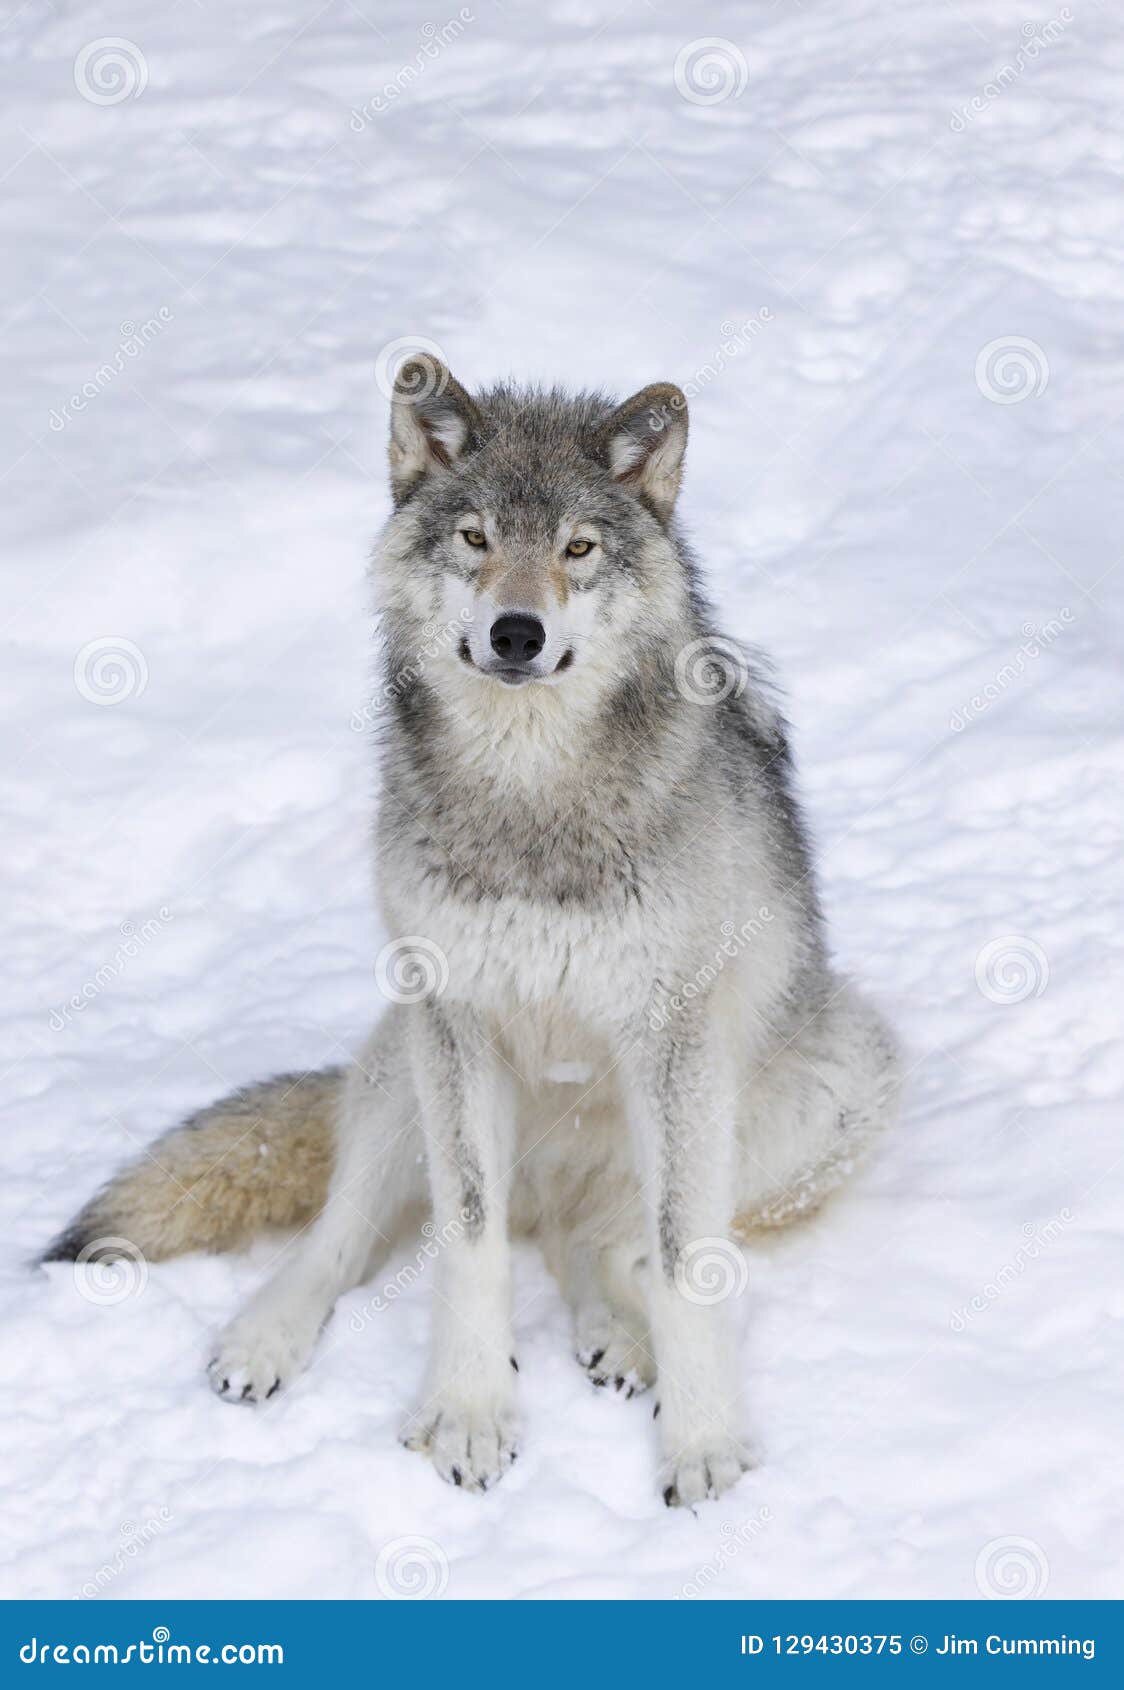 wolf sitting